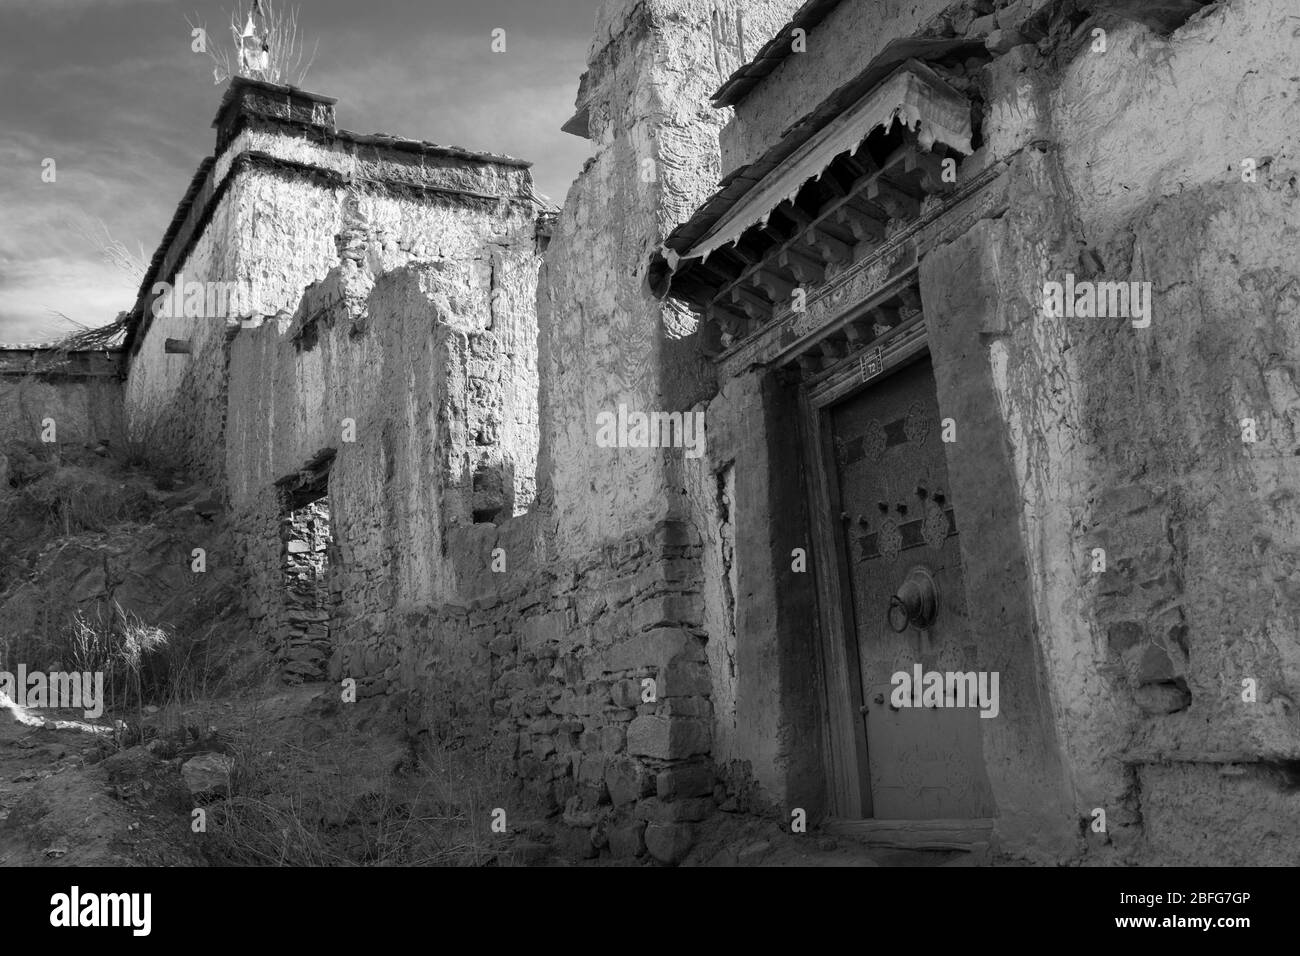 Die engen Gassen und irdenen Häuser von Gyantses Altstadt, Tibet Stockfoto